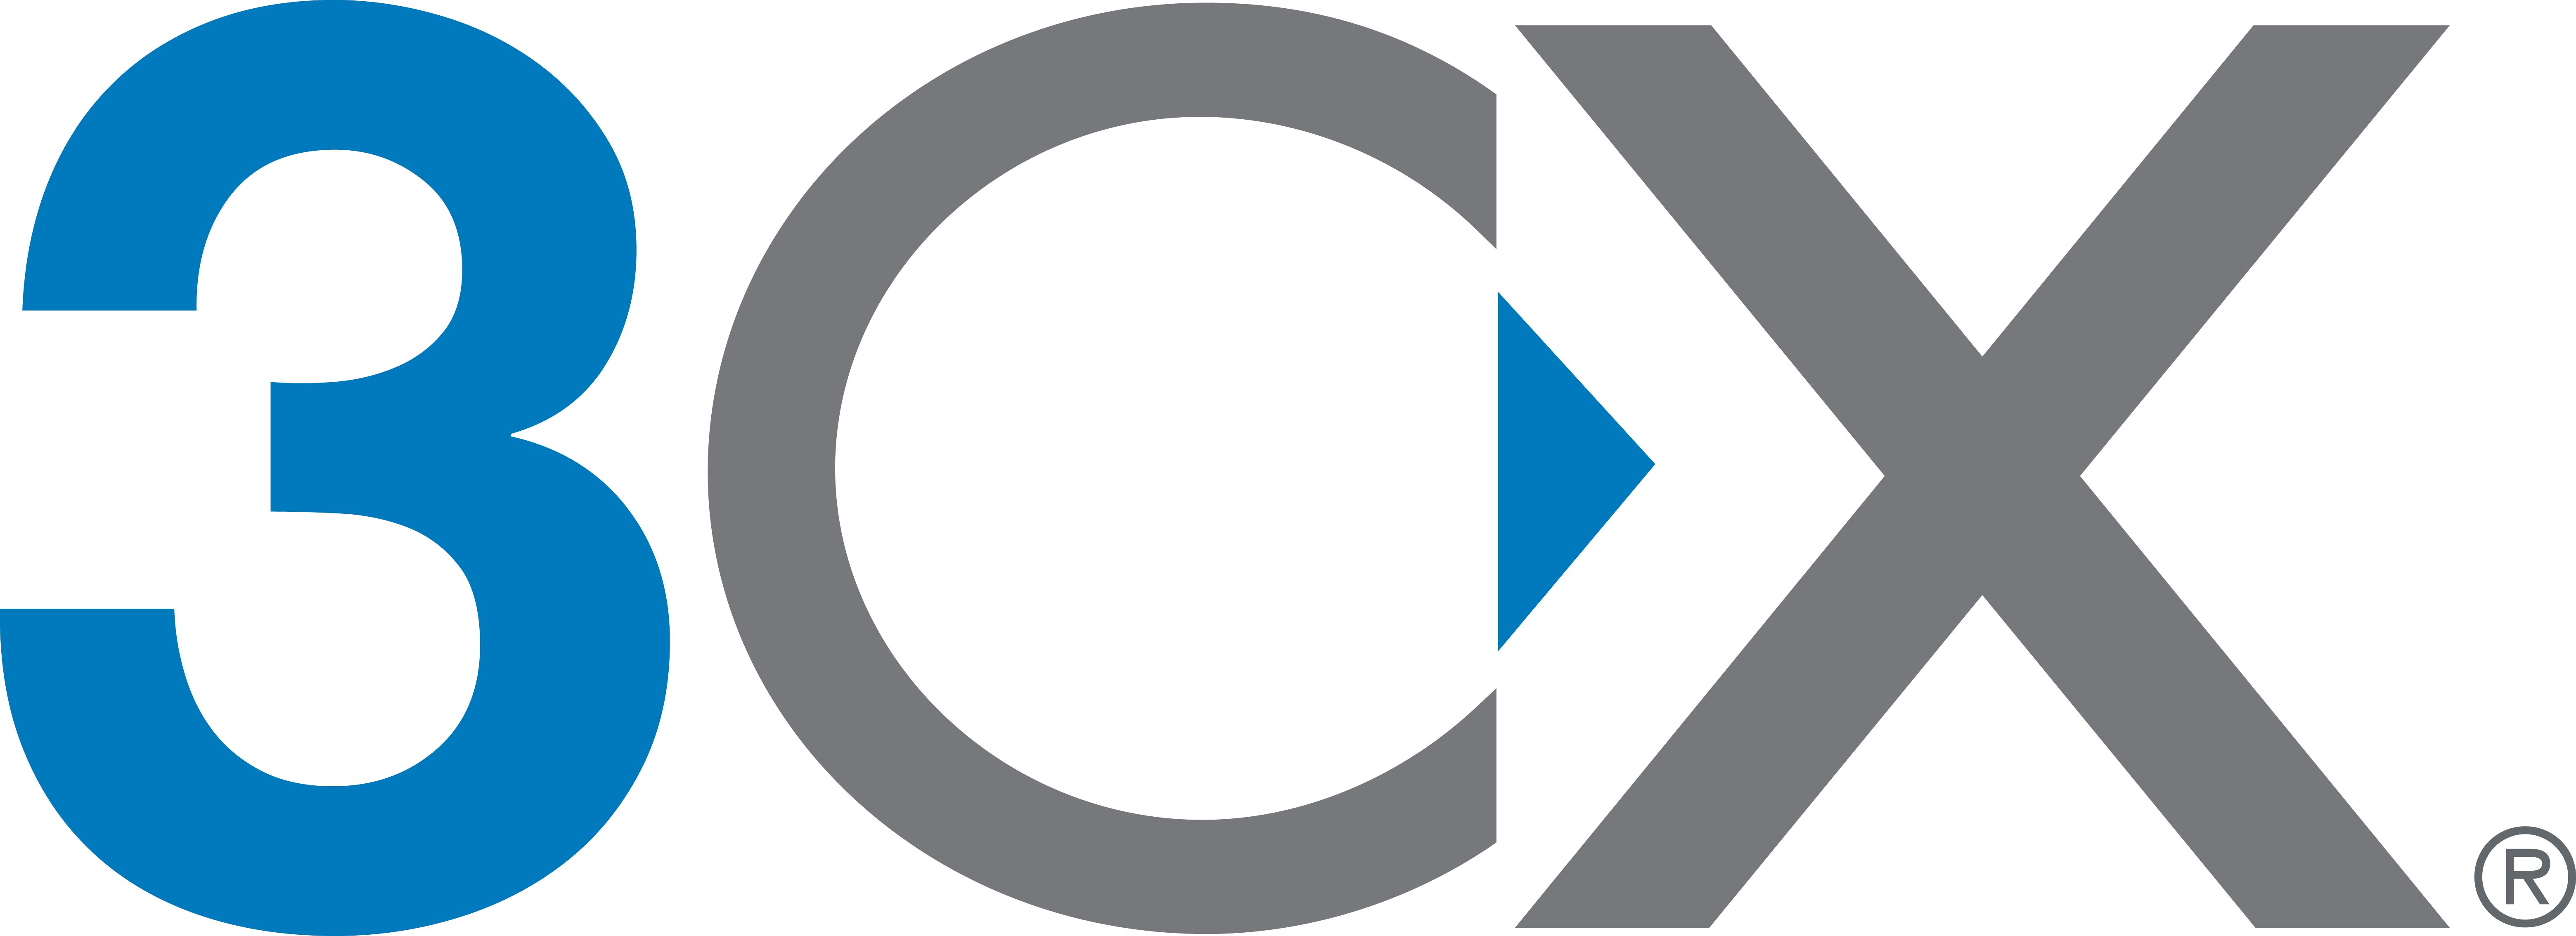 3CX Logo photo - 1